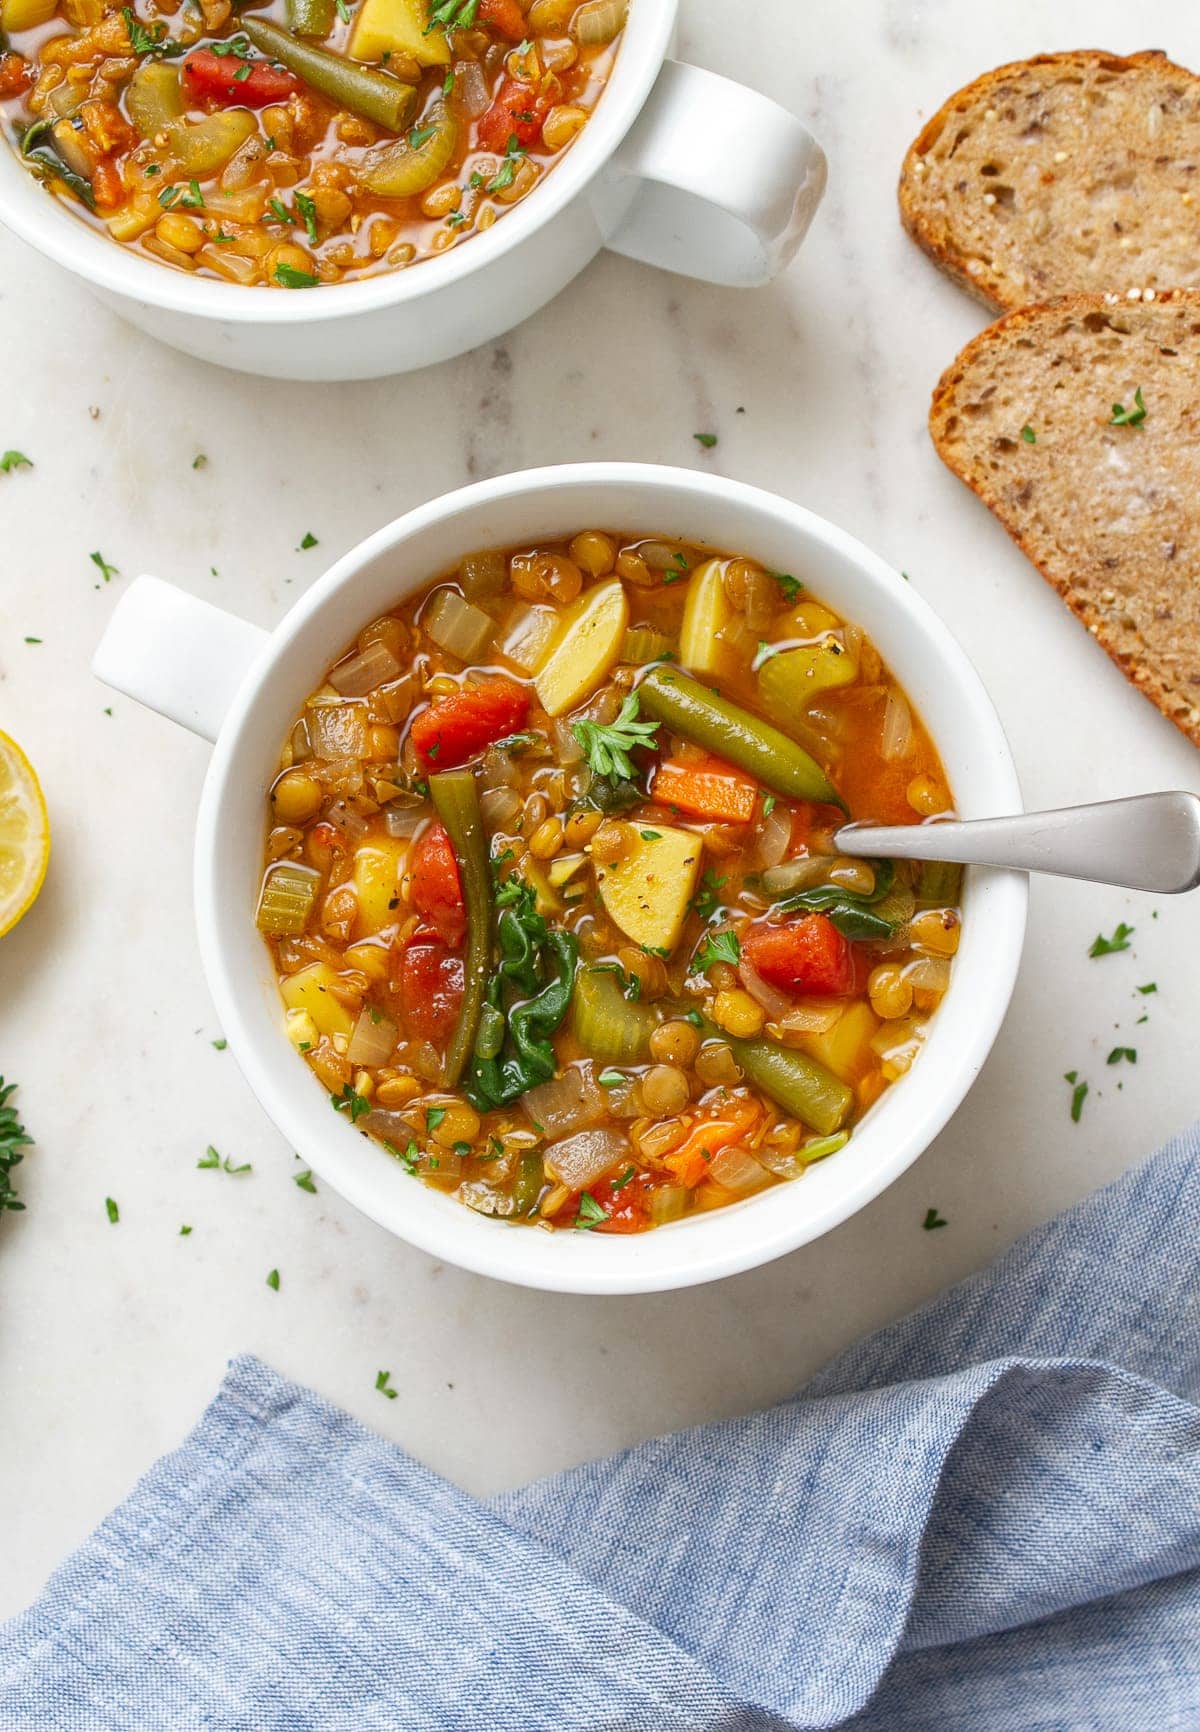 Hearty Vegan Lentil Soup - A Delicious 1-Pot Soup Recipe